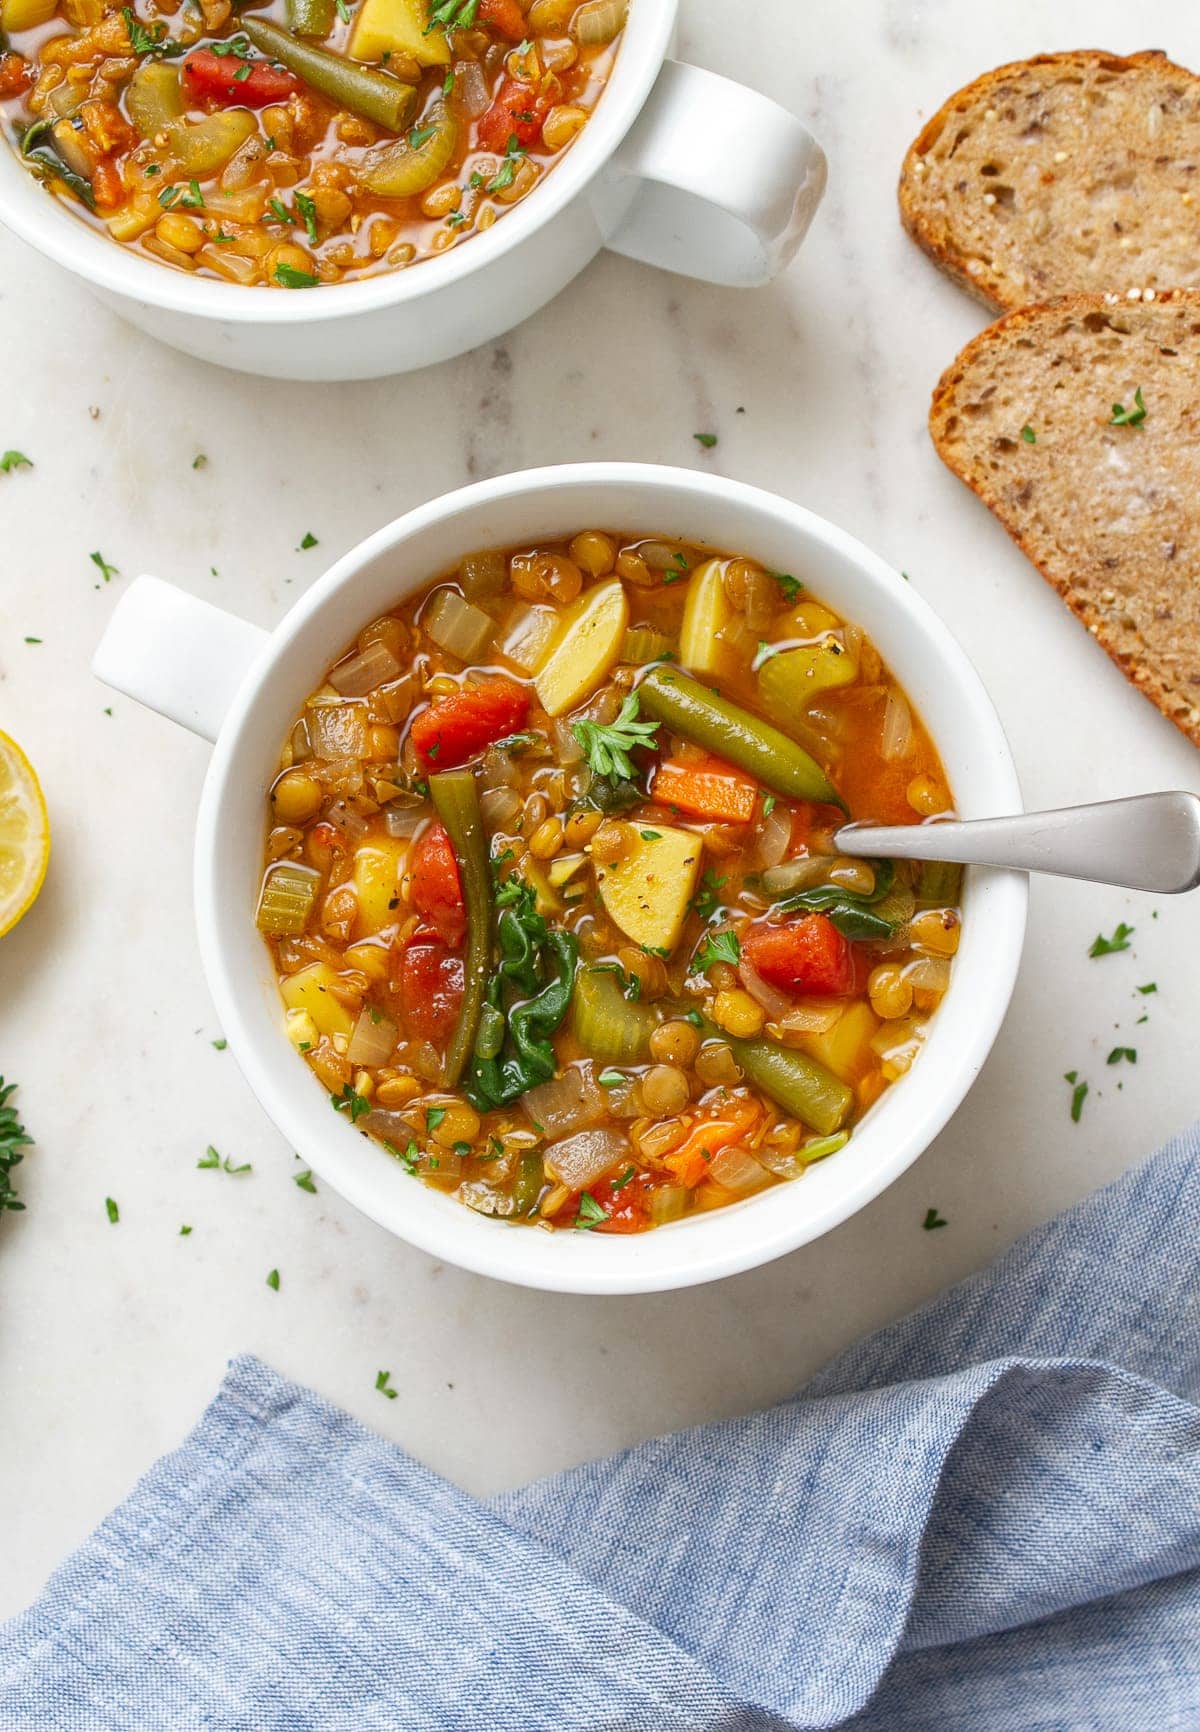 Hearty Vegan Lentil Soup - A Delicious 1-Pot Soup Recipe